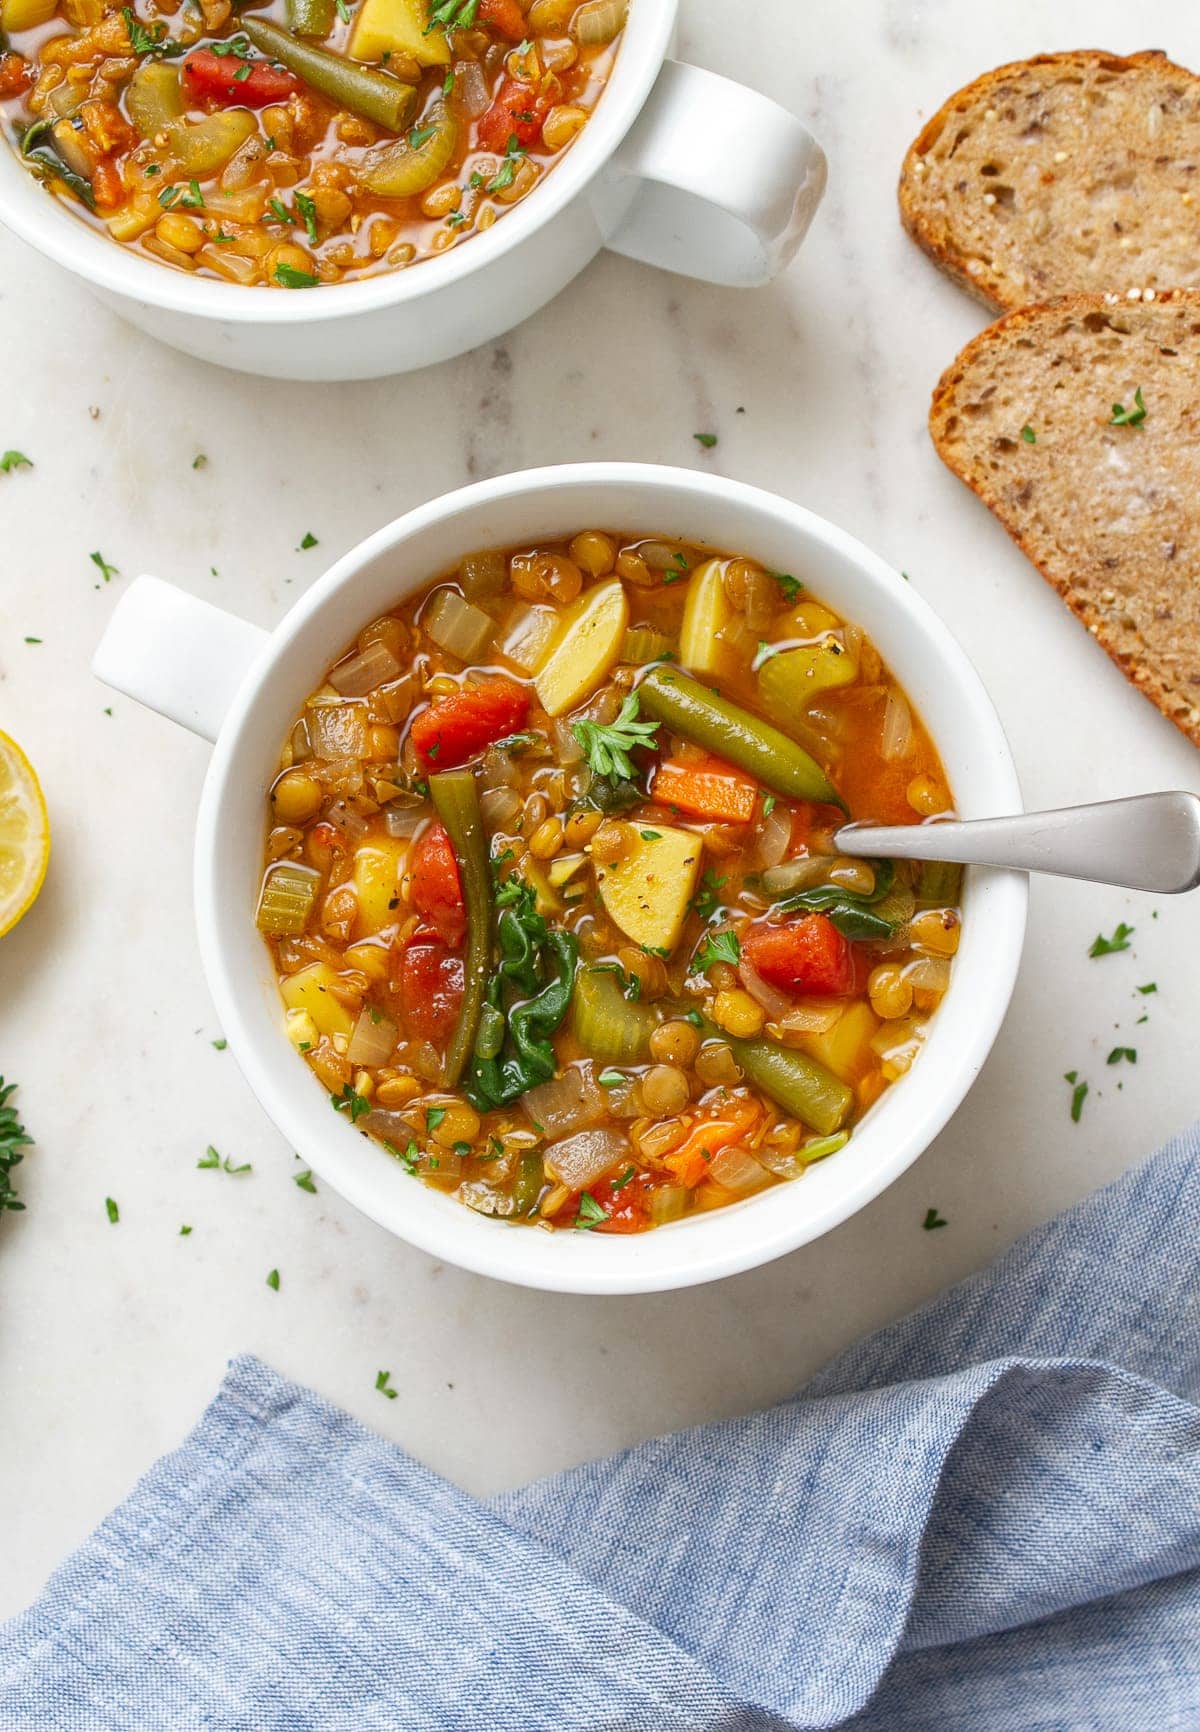 Hearty Vegan Lentil Soup - A Delicious 1-Pot Soup Recipe